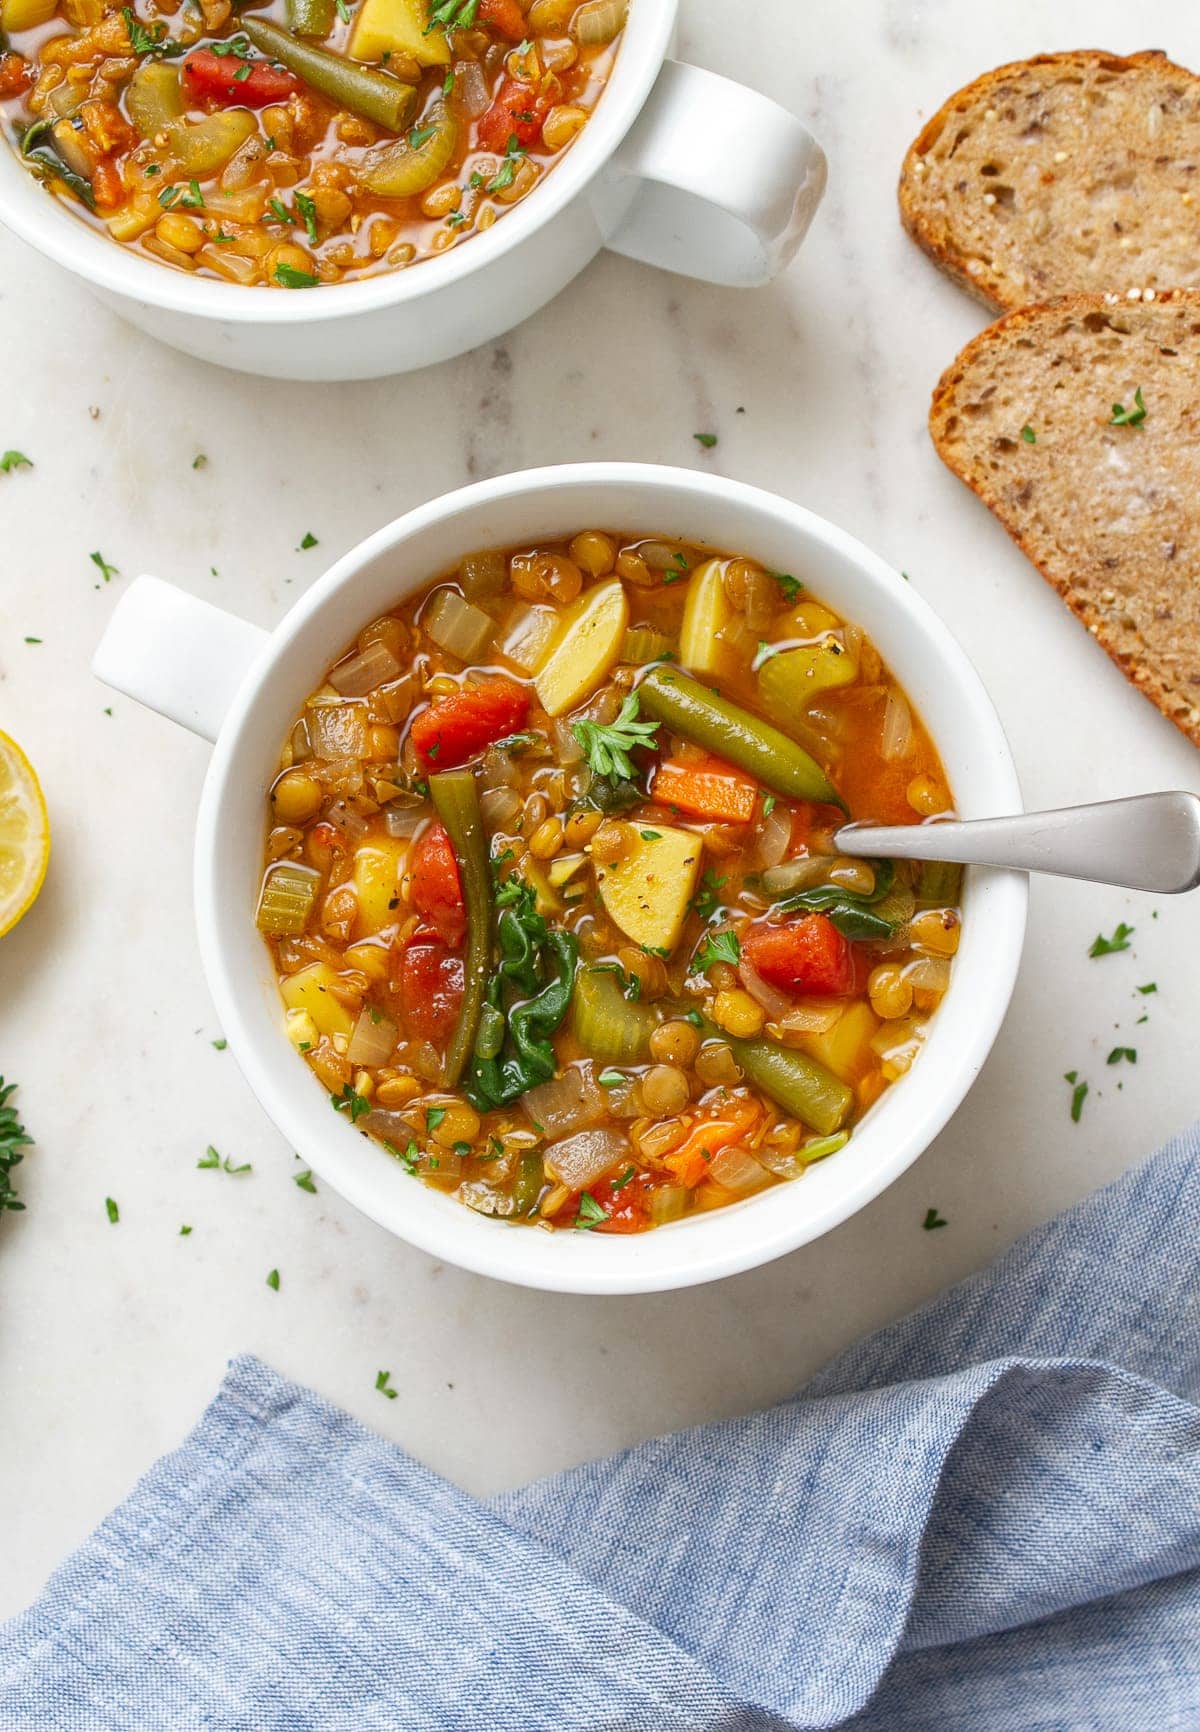 Hearty Vegan Lentil Soup - A Delicious 1-Pot Soup Recipe